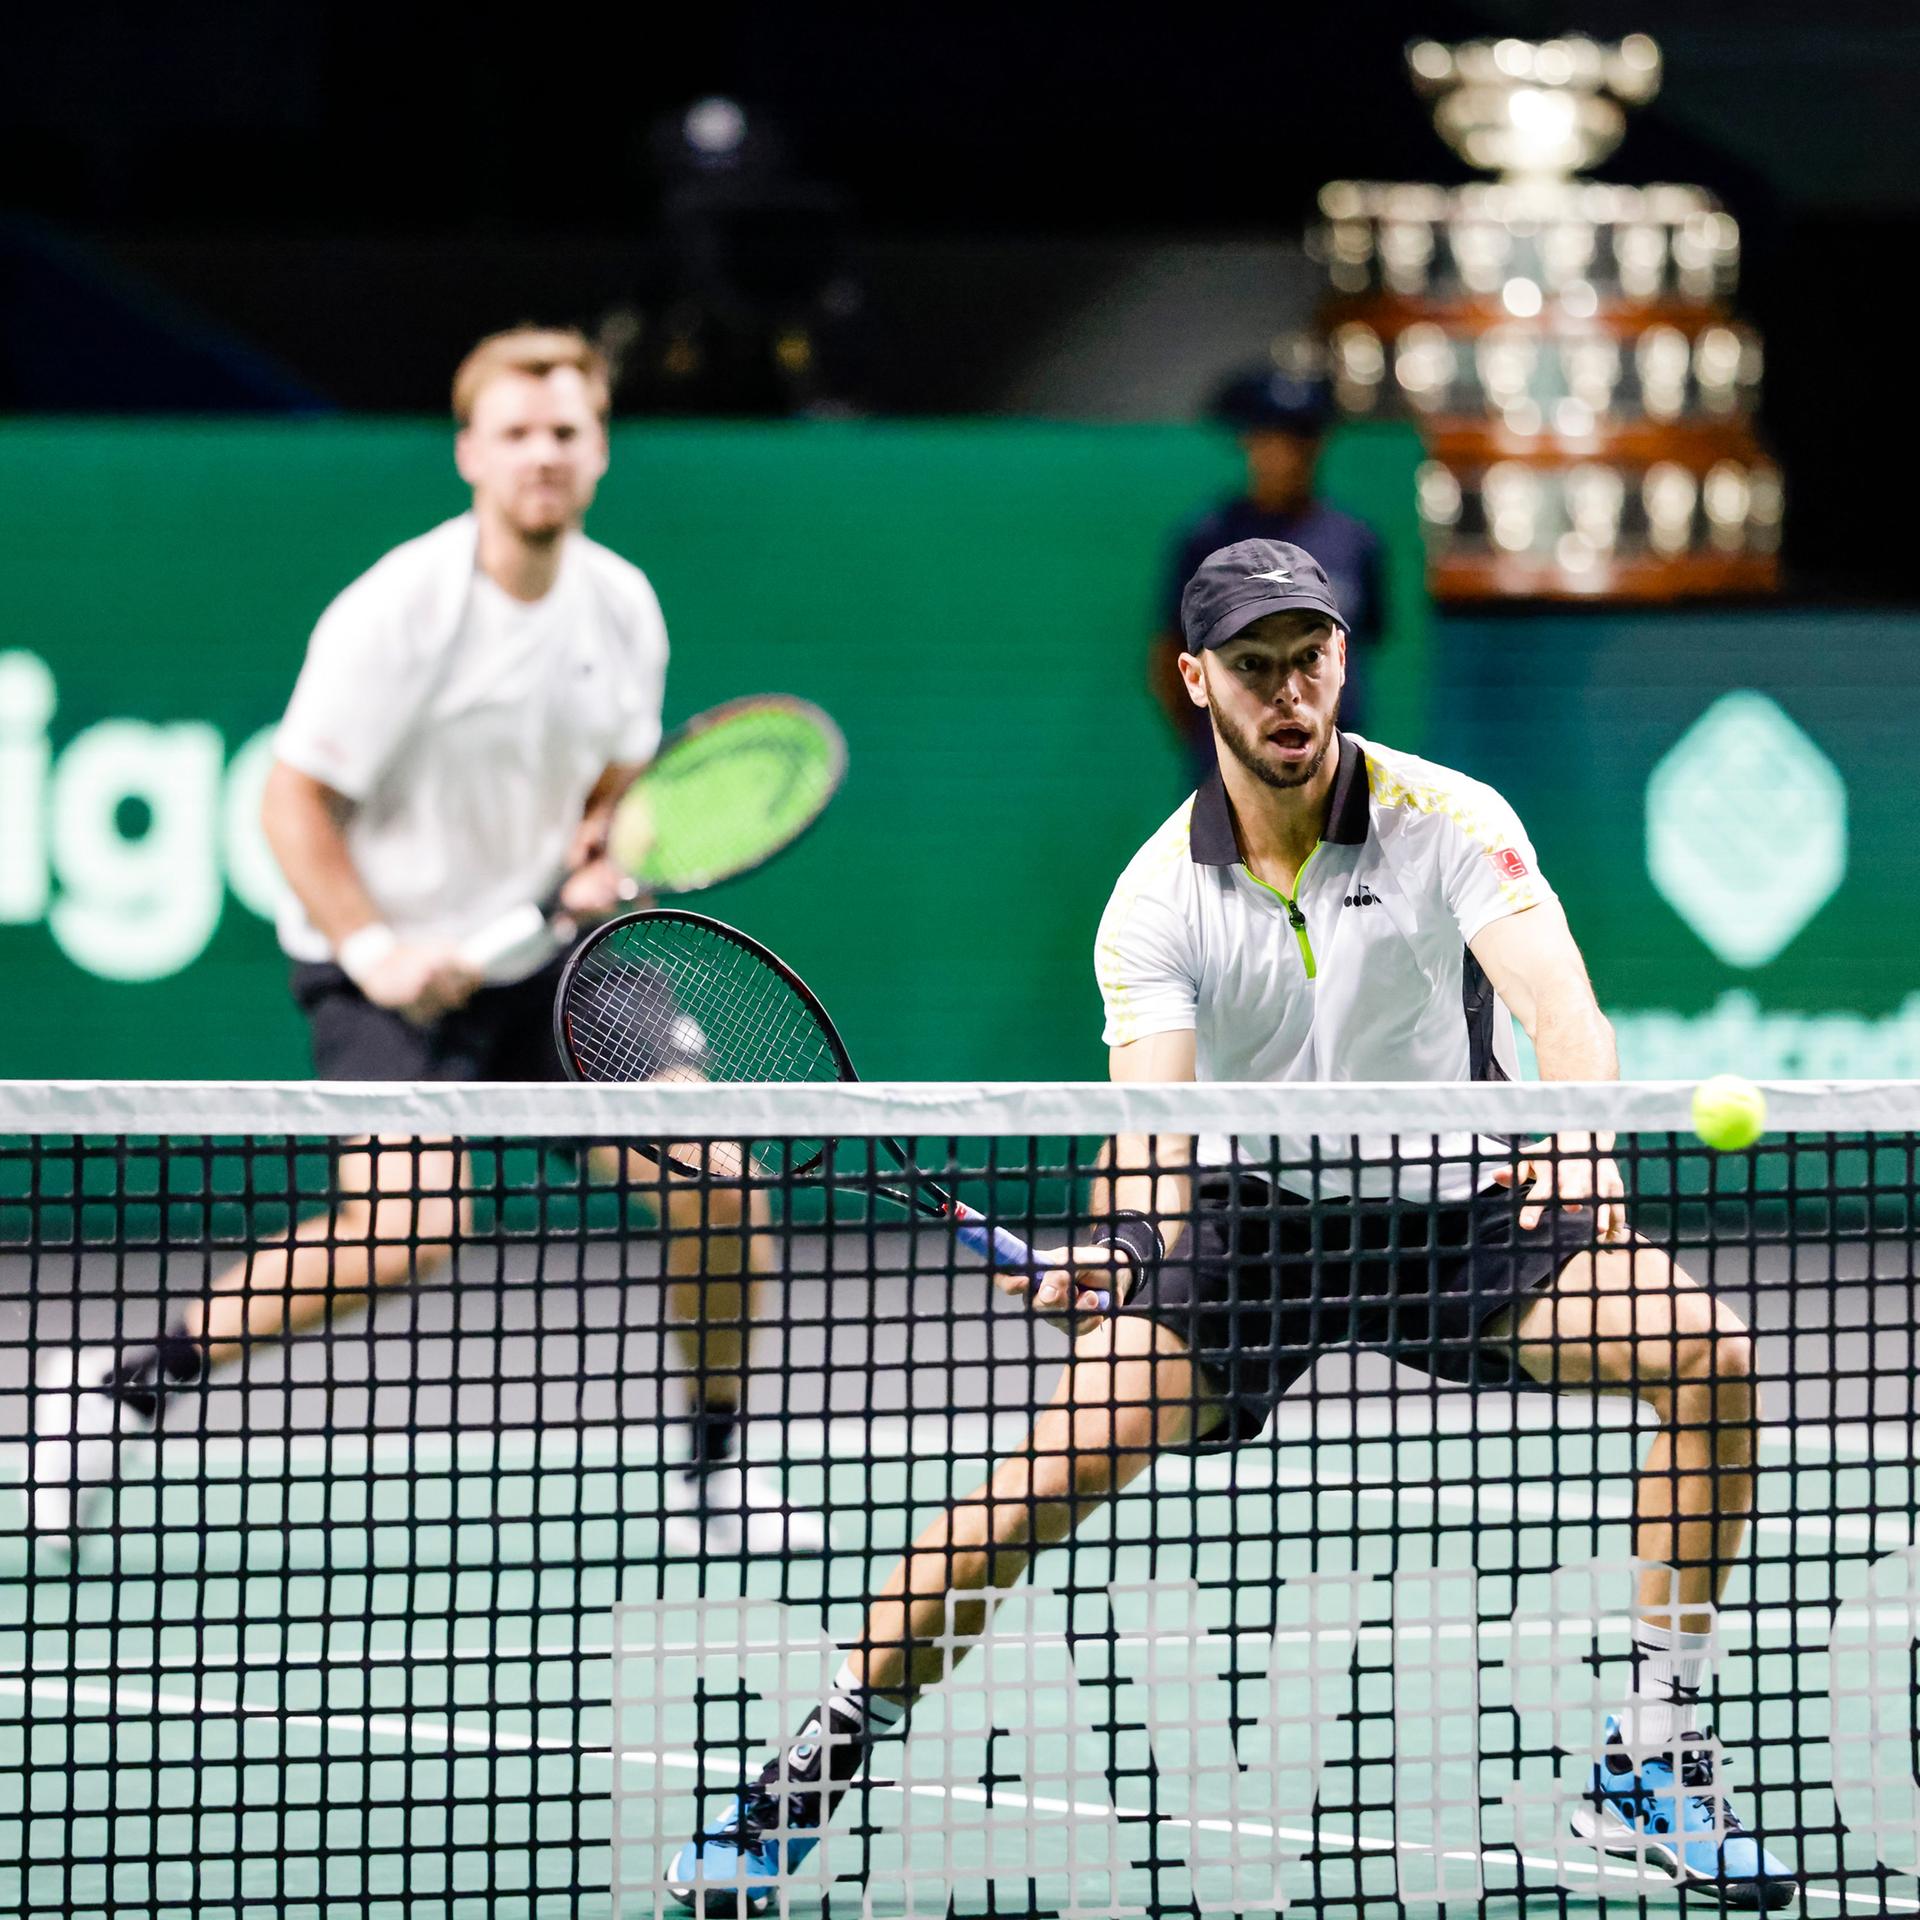 Zwei Männer hinter einem Tennisnetz in Aktion